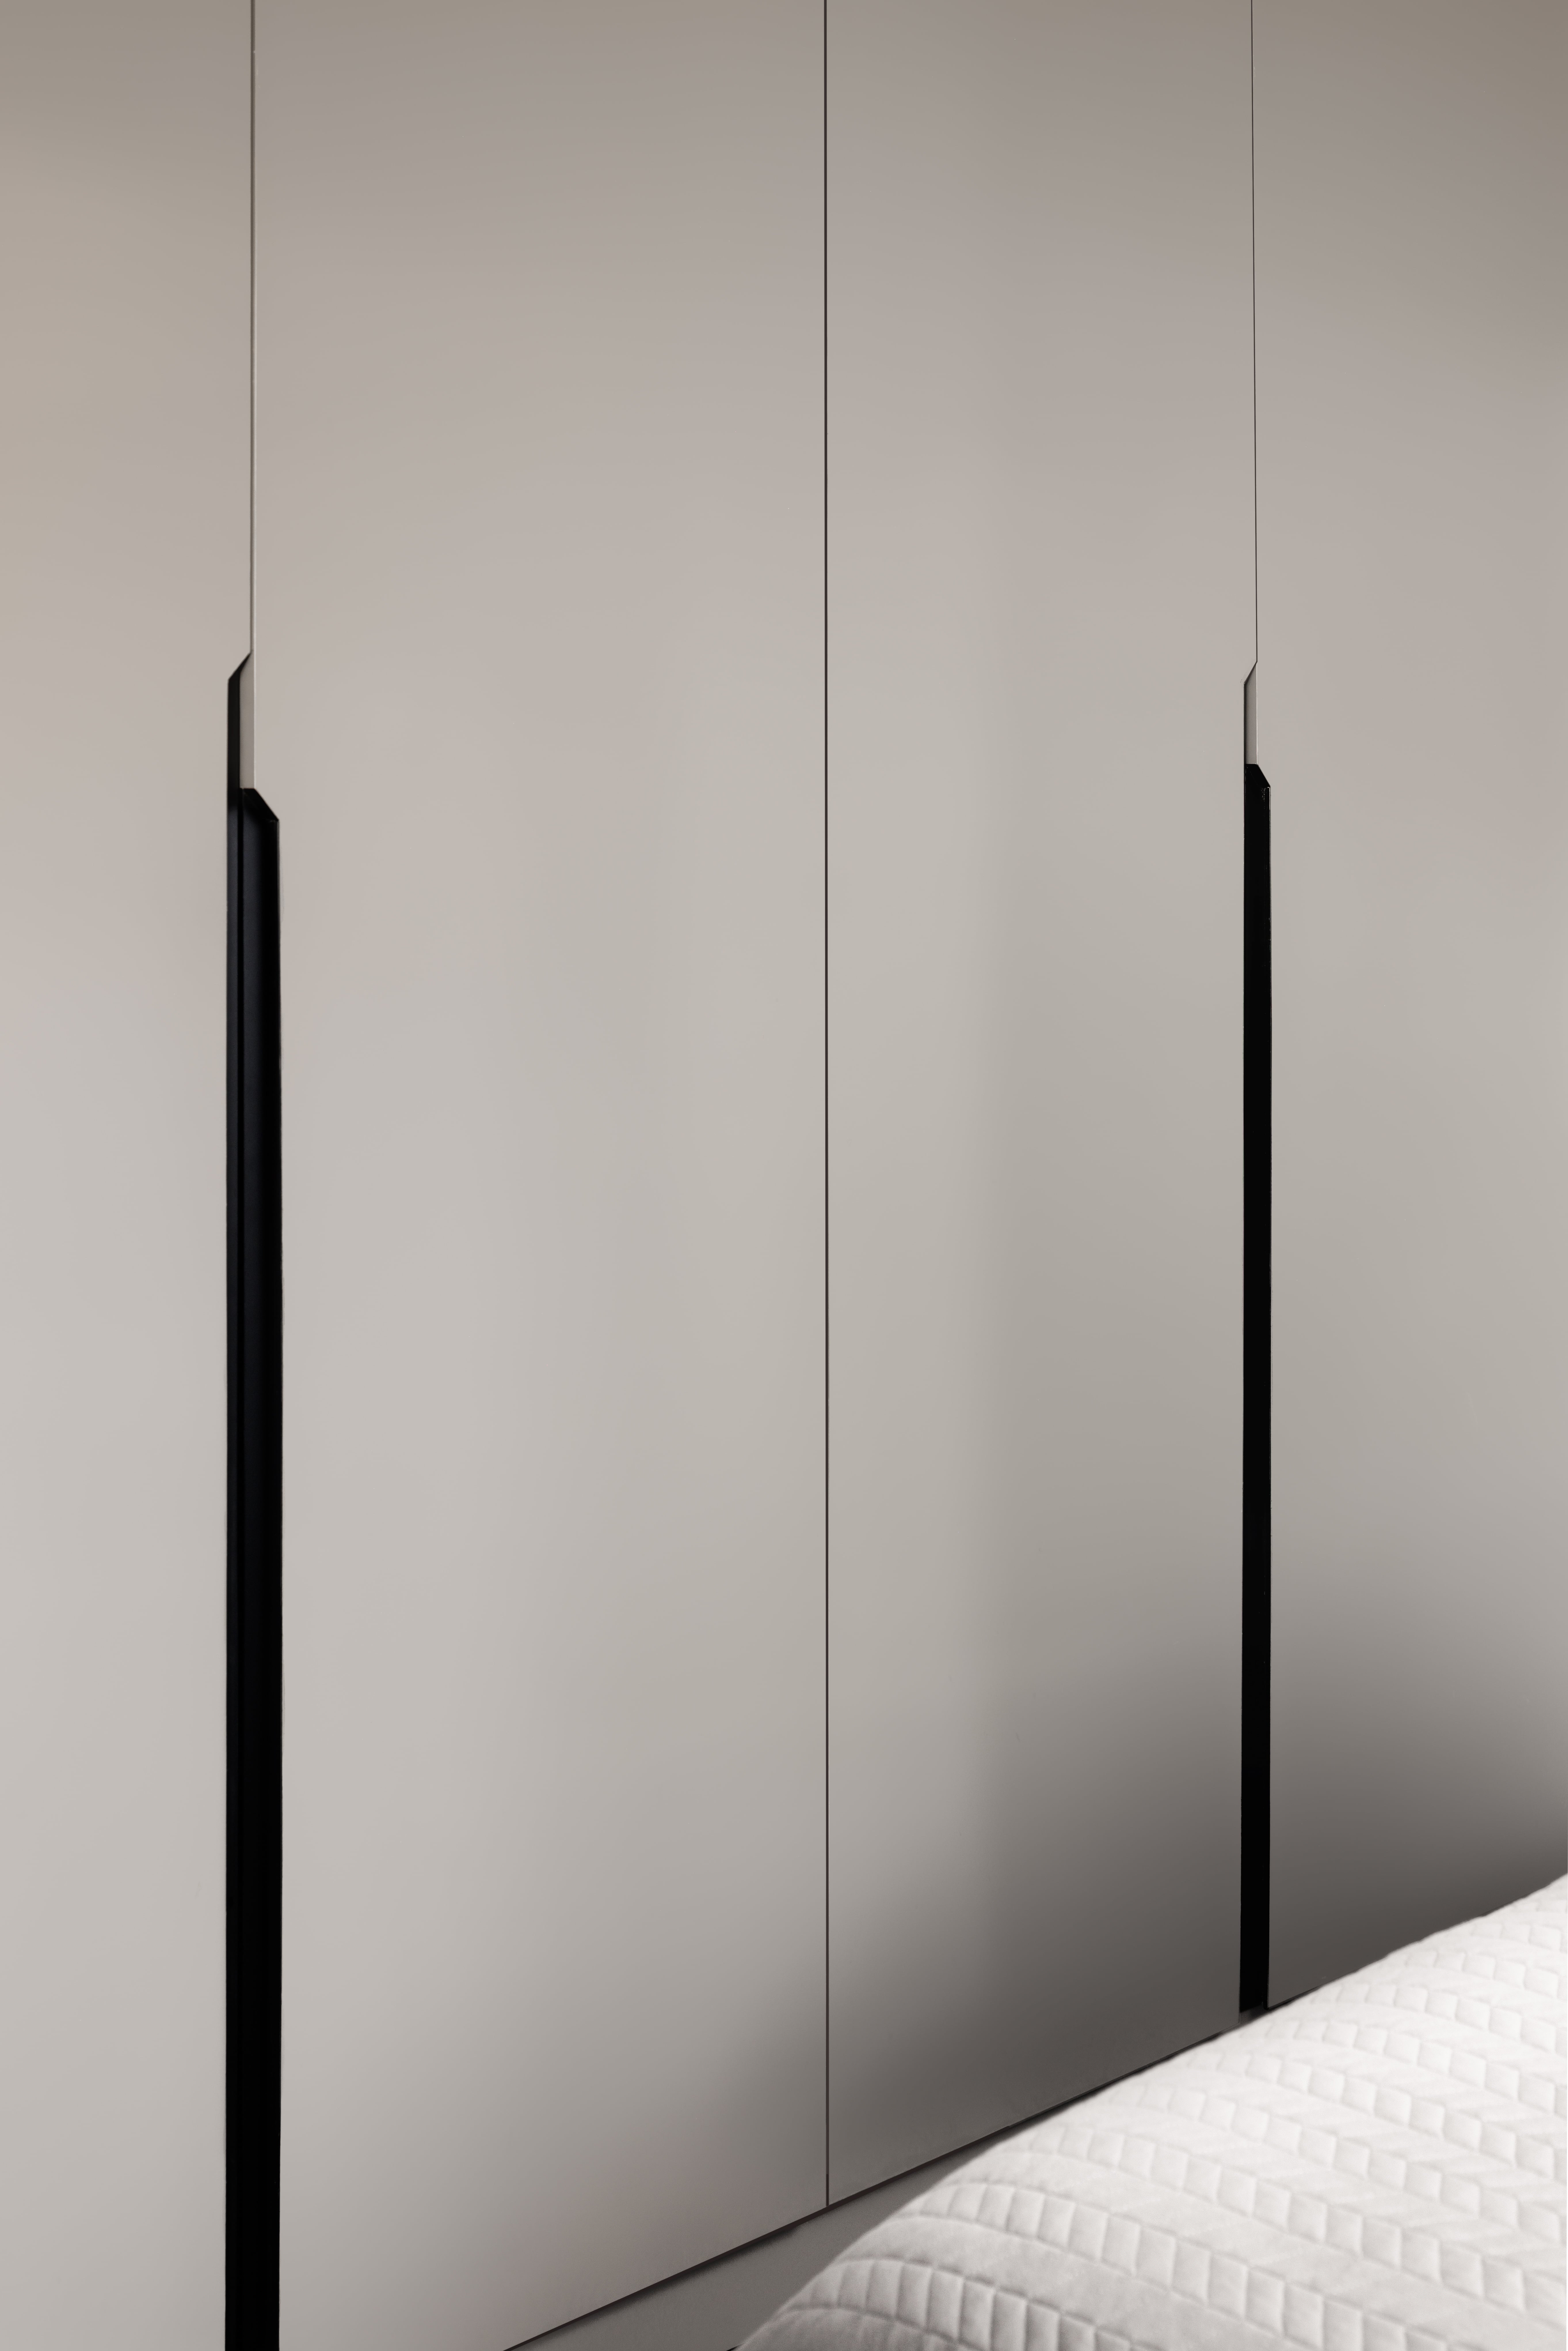 Minimalist Design -  - HDB 4 Room - Design by Apex Studios Pte Ltd